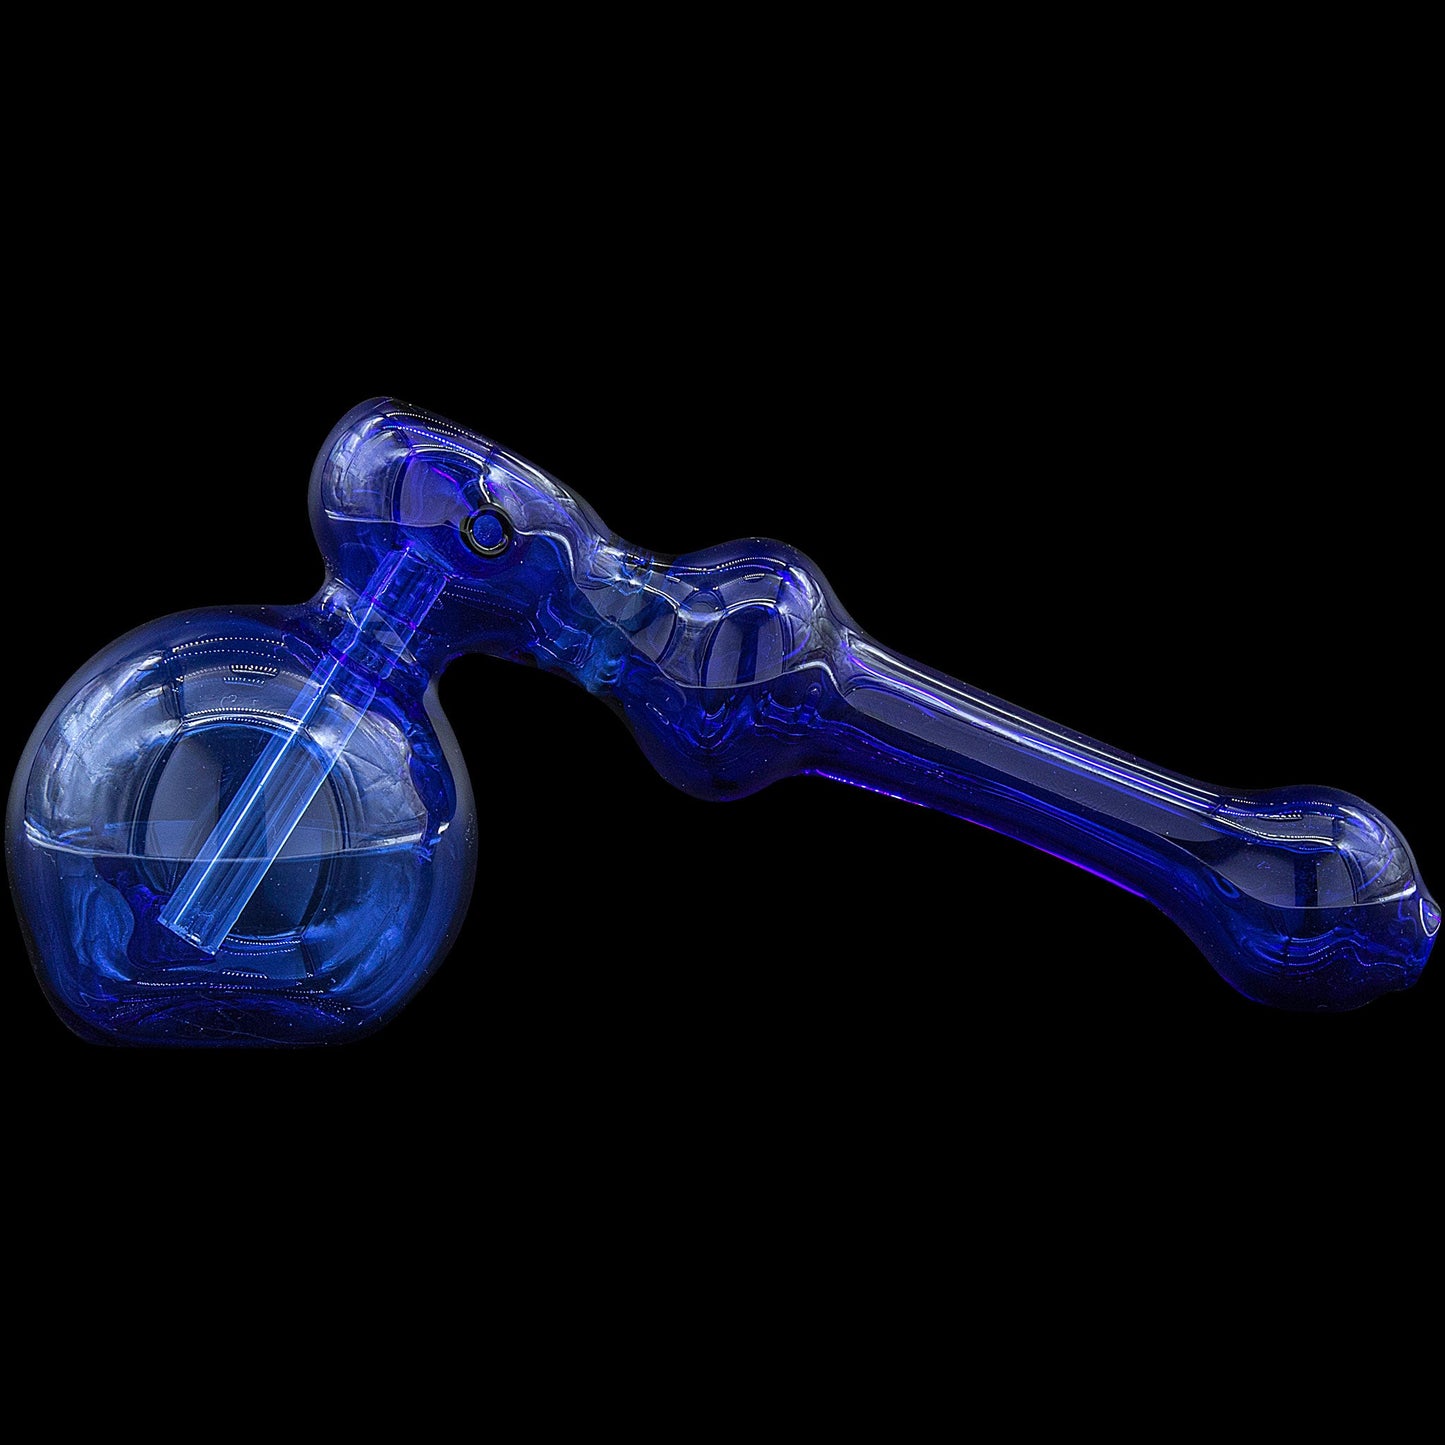 The "Glass Hammer" Bubbler